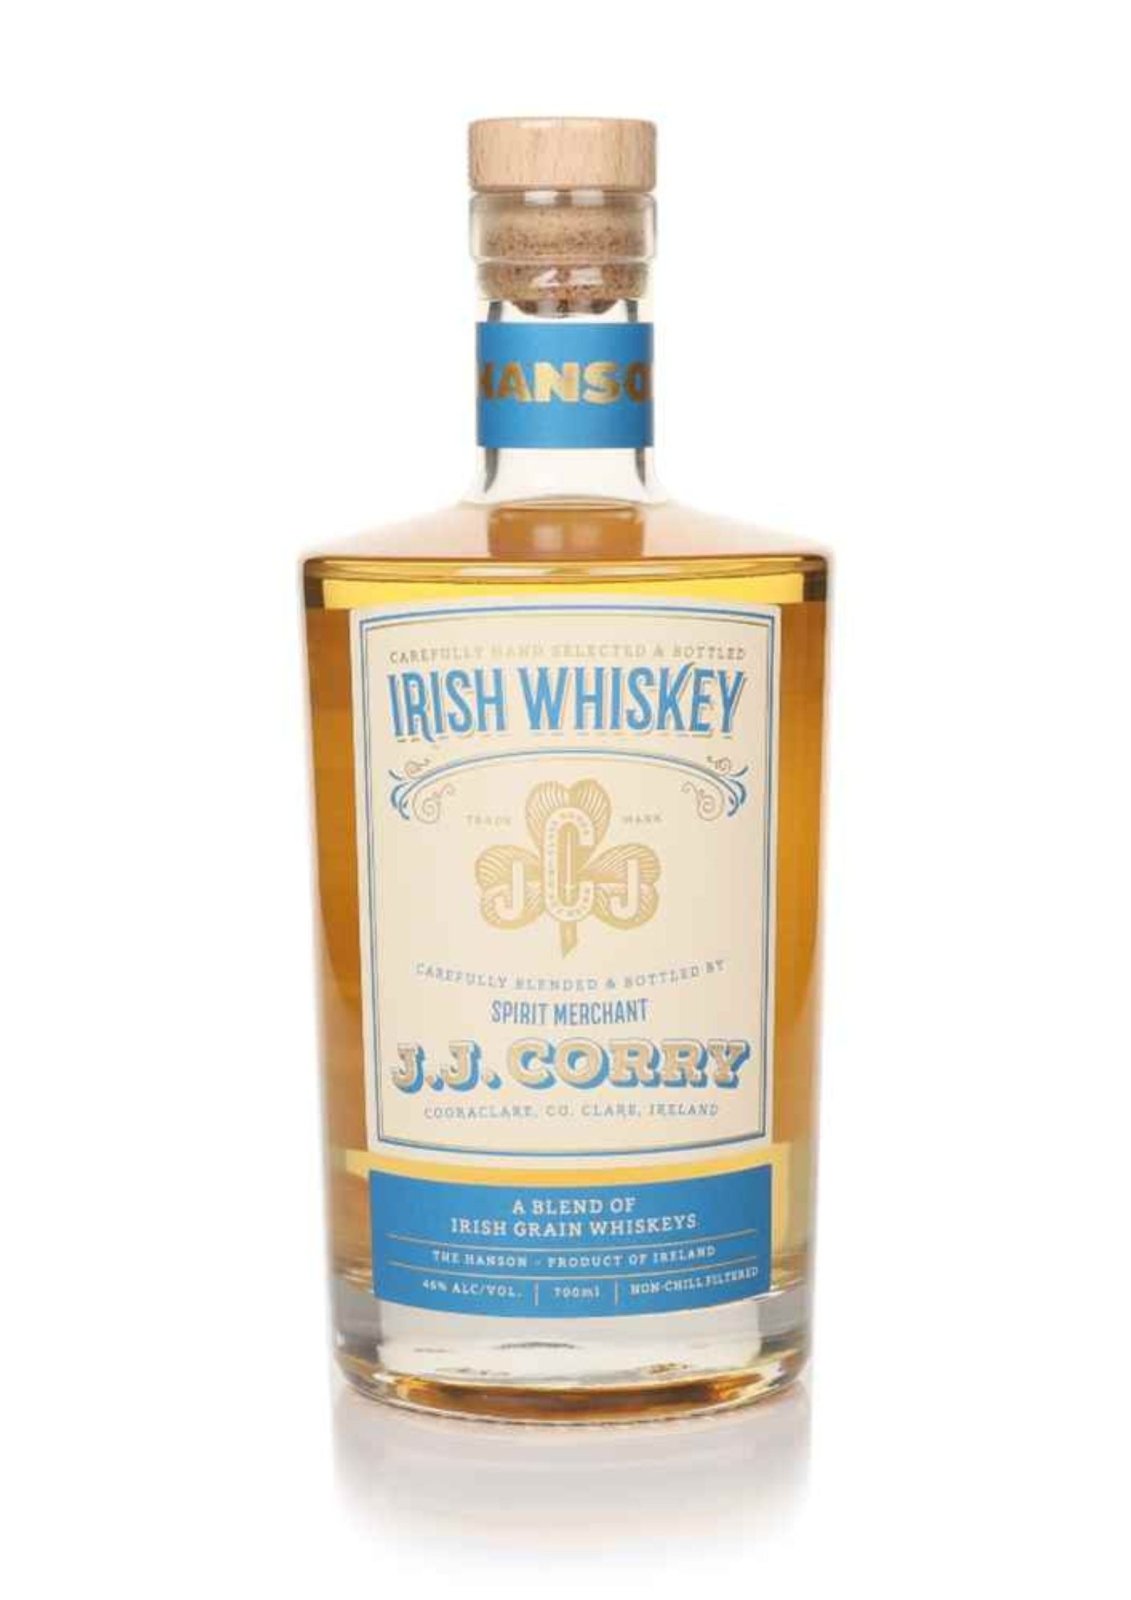 Bottle of J.J. Corry The Hanson, Blended Irish Grain Whiskey, 46%